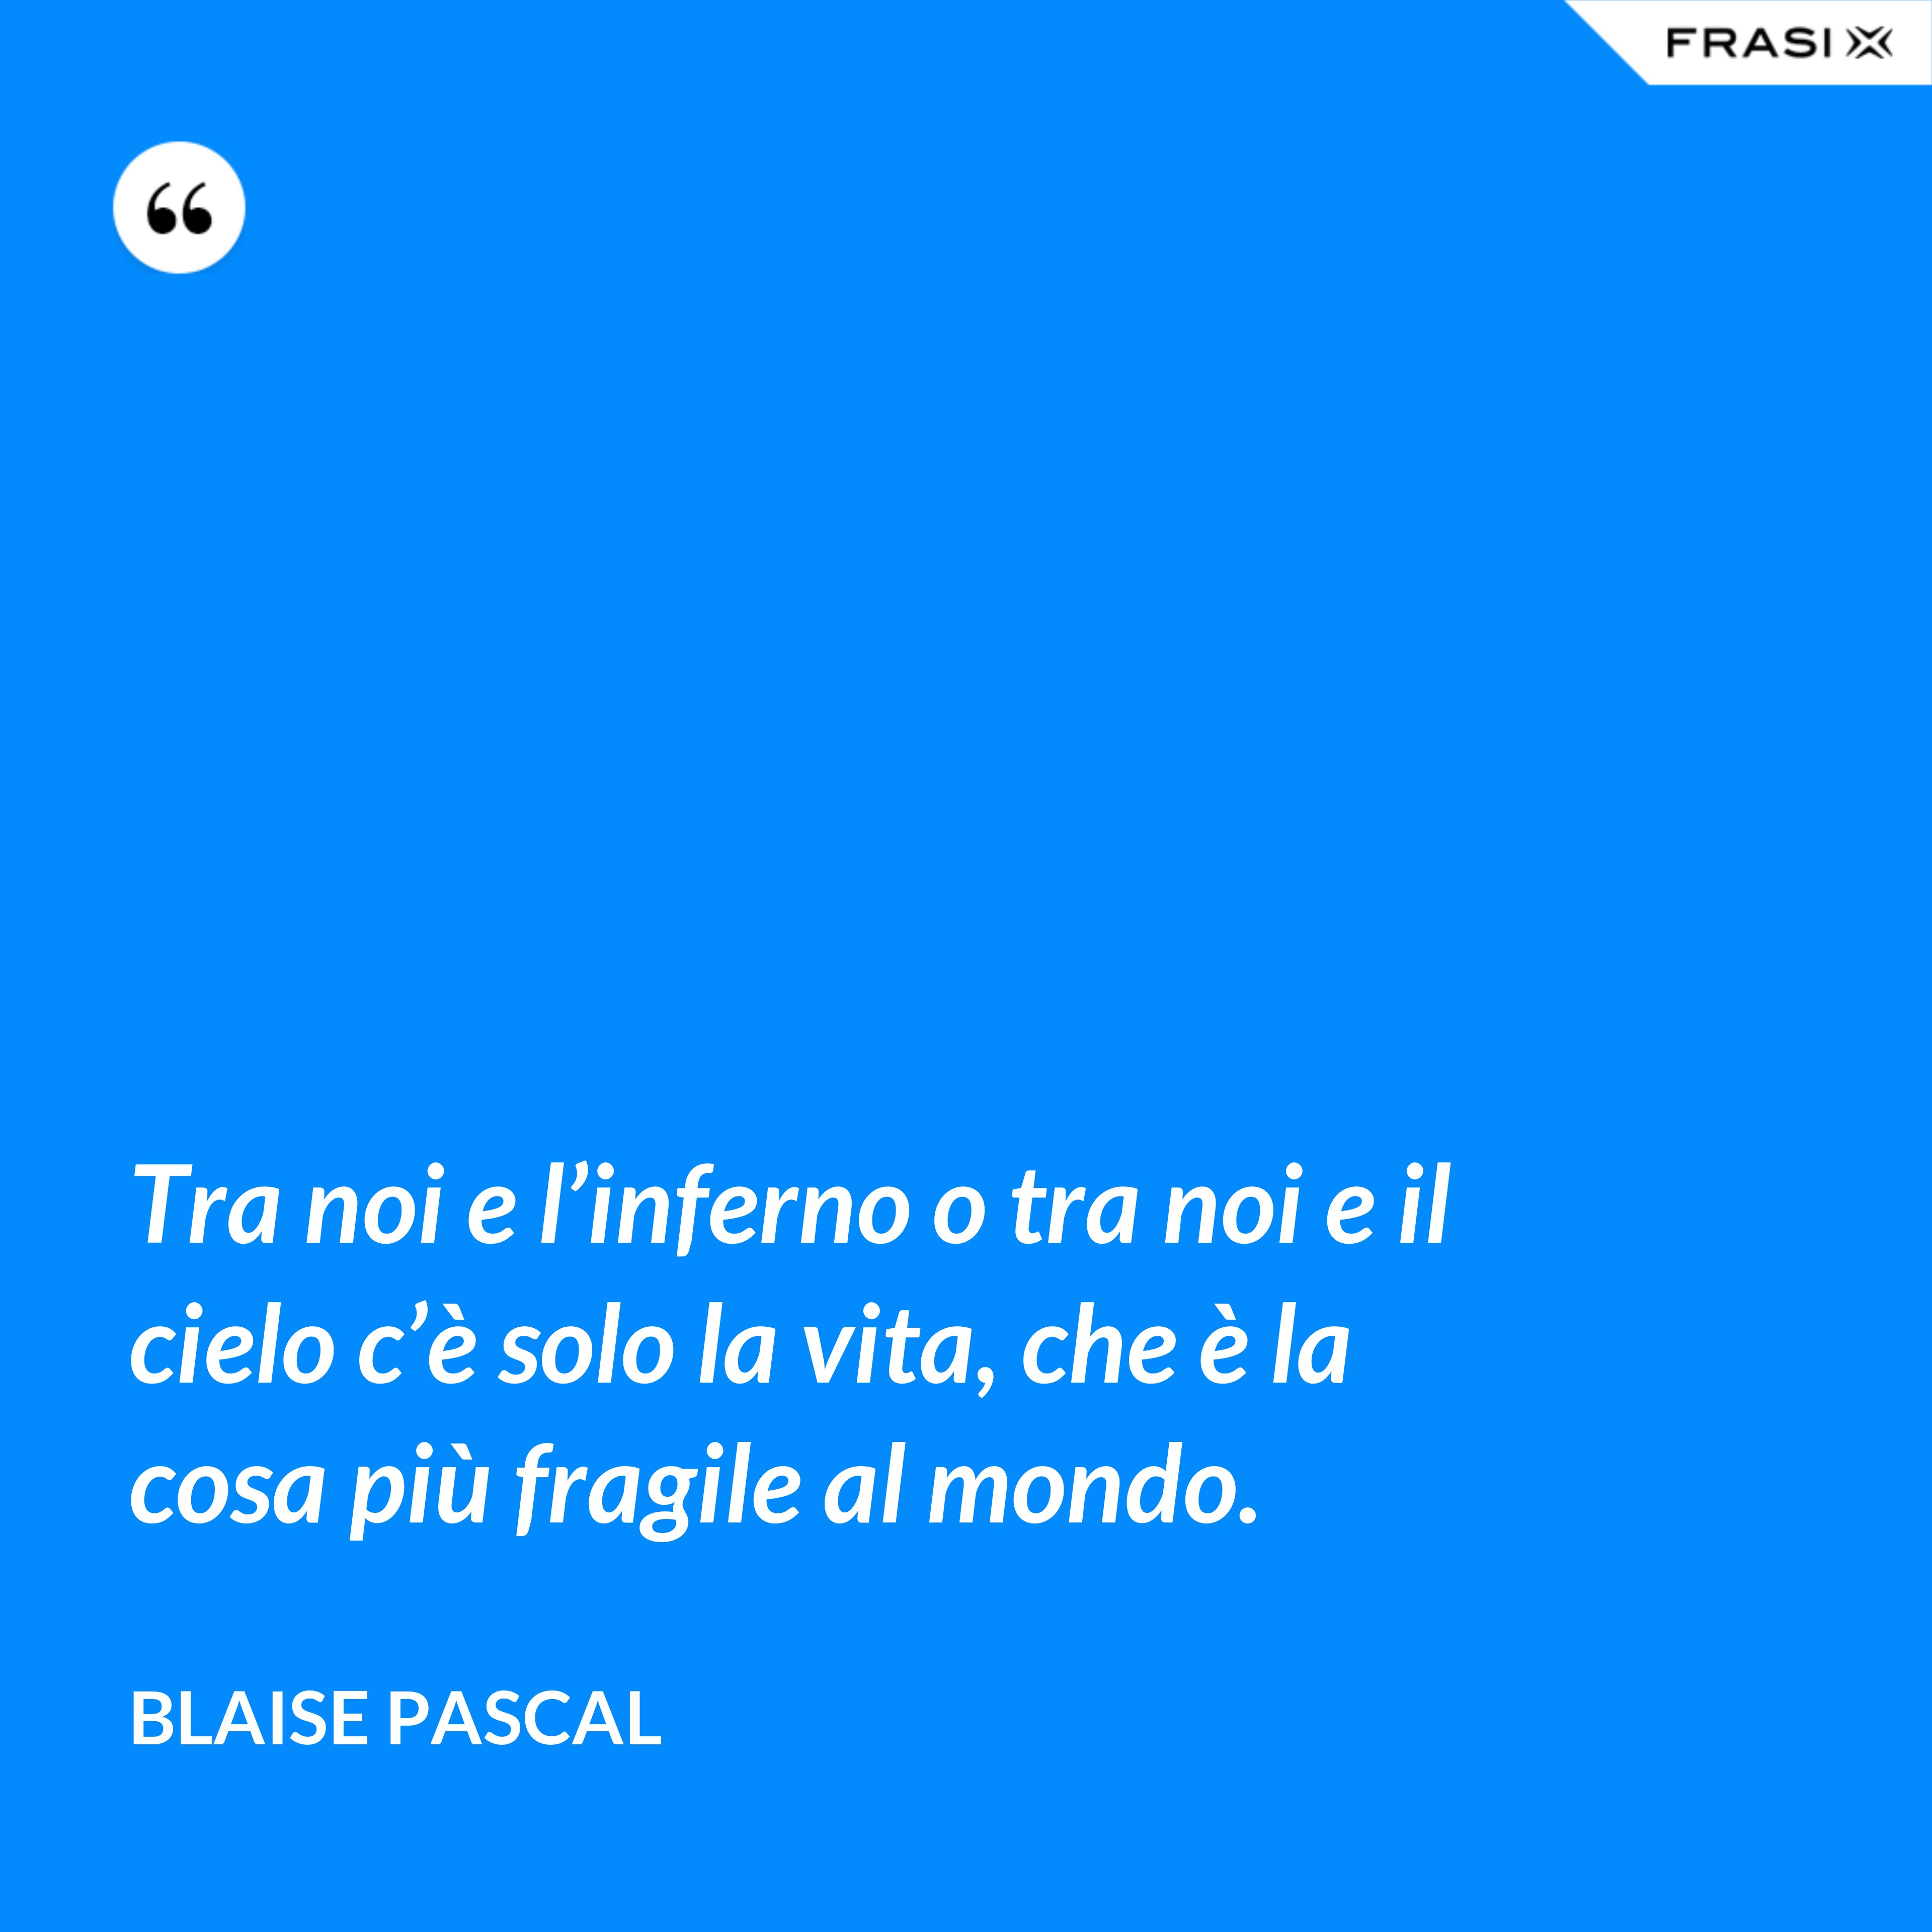 Tra noi e l’inferno o tra noi e il cielo c’è solo la vita, che è la cosa più fragile al mondo. - Blaise Pascal